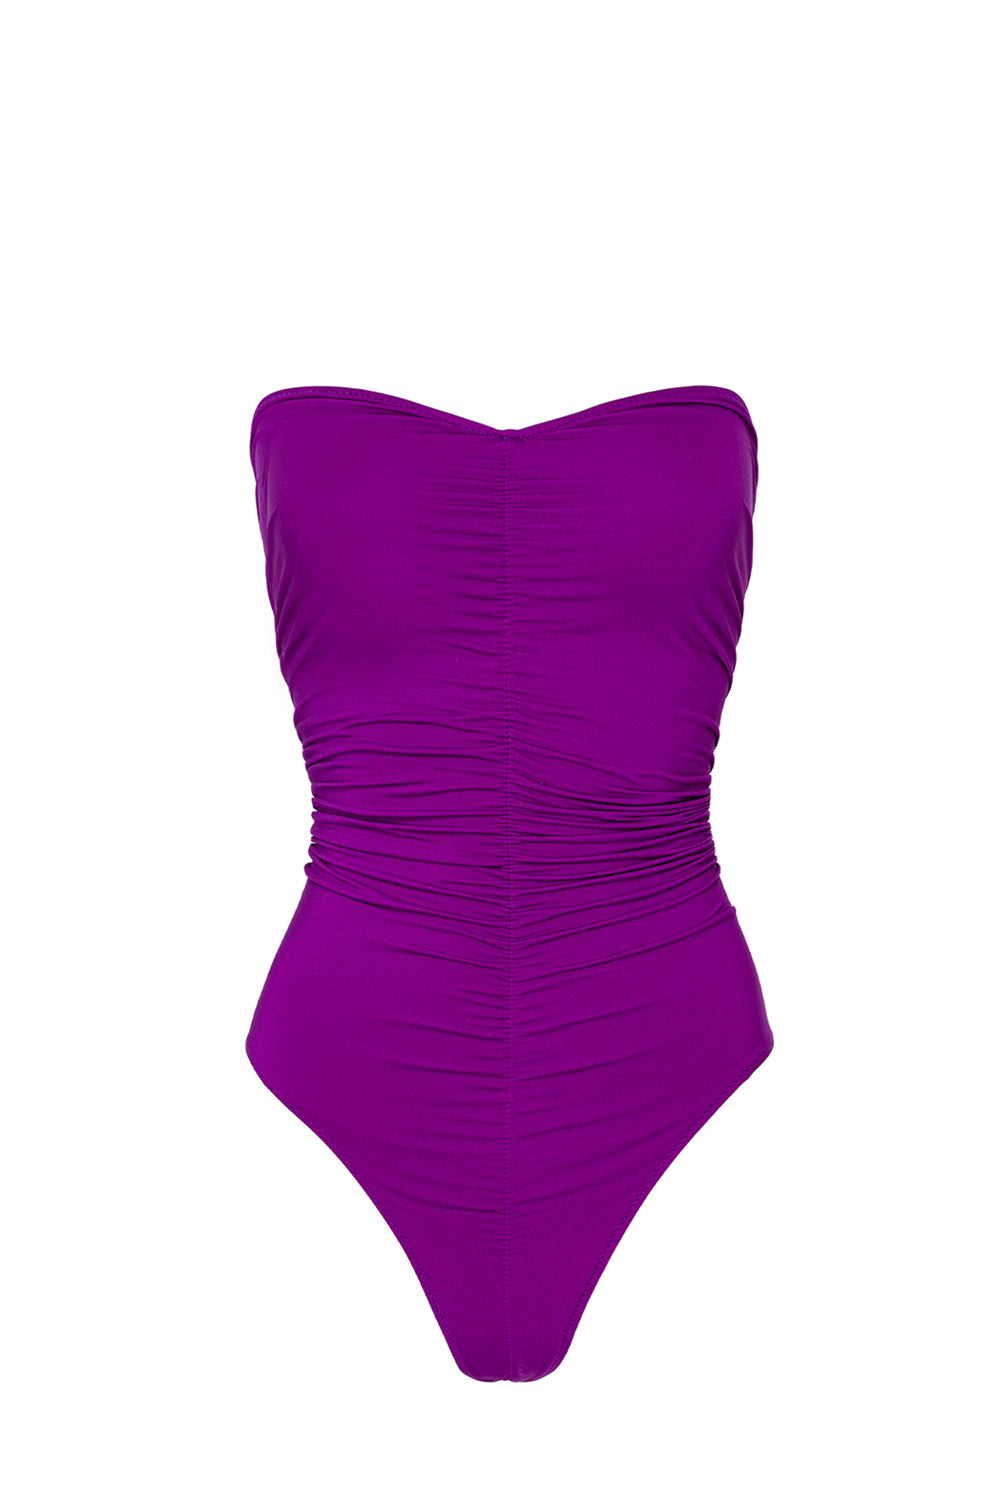 Intero Micro Purple